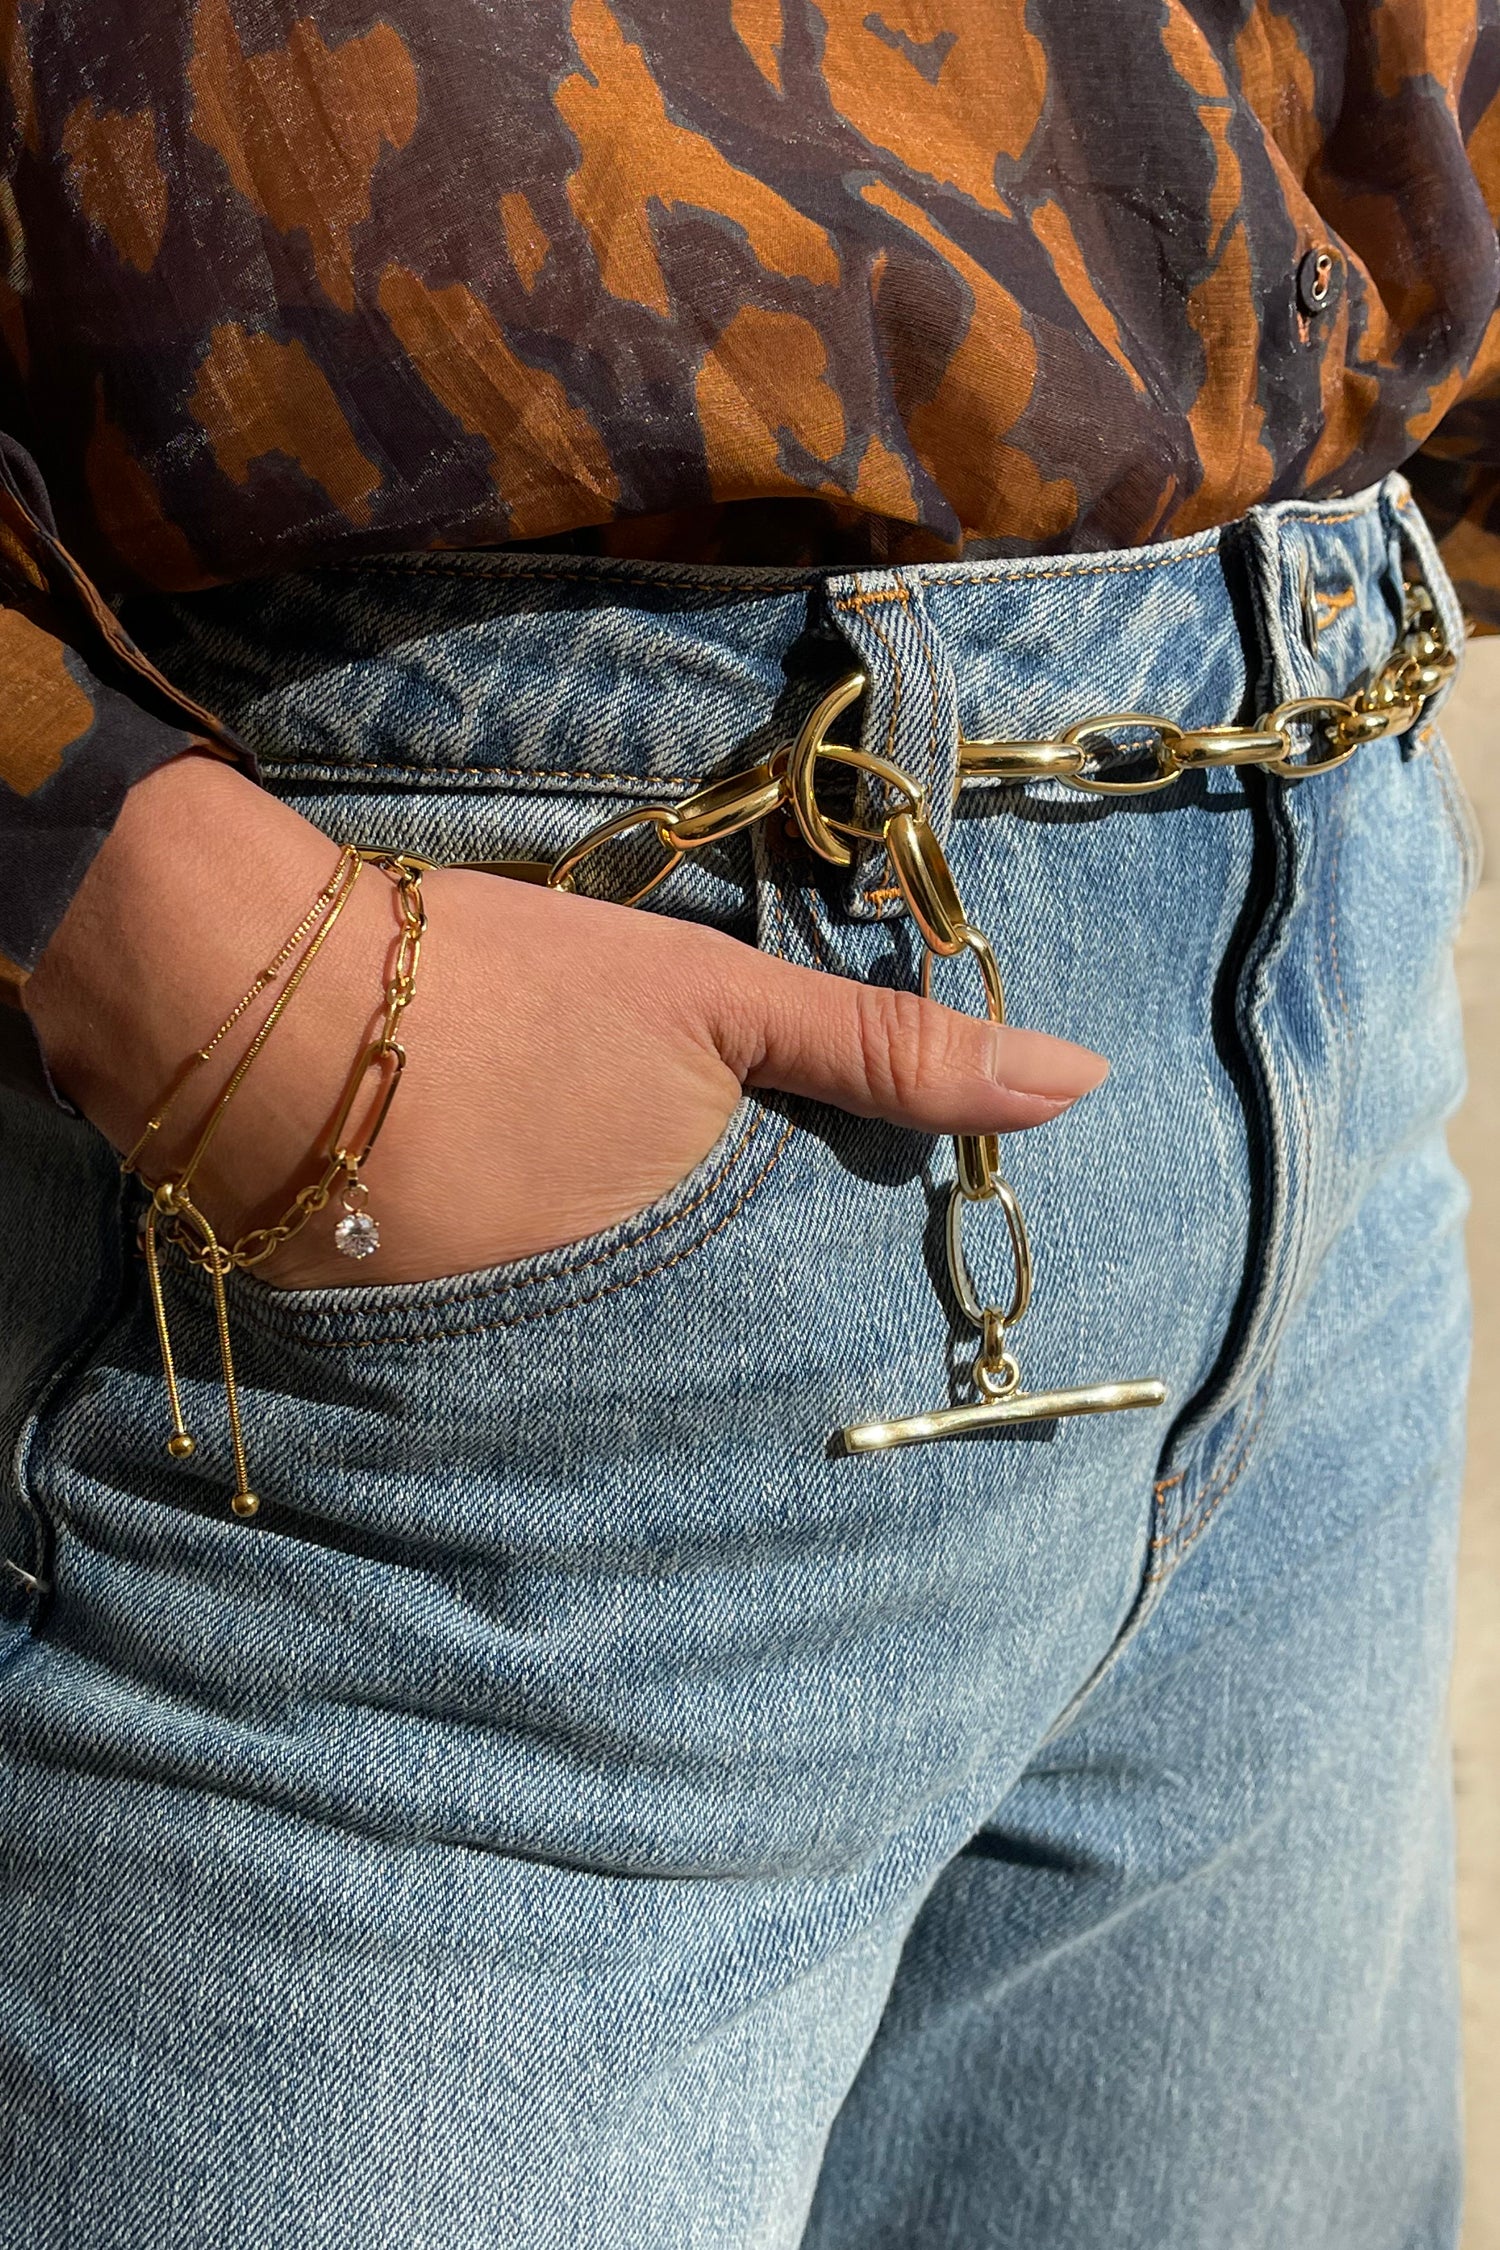 Clasping Link Bracelet